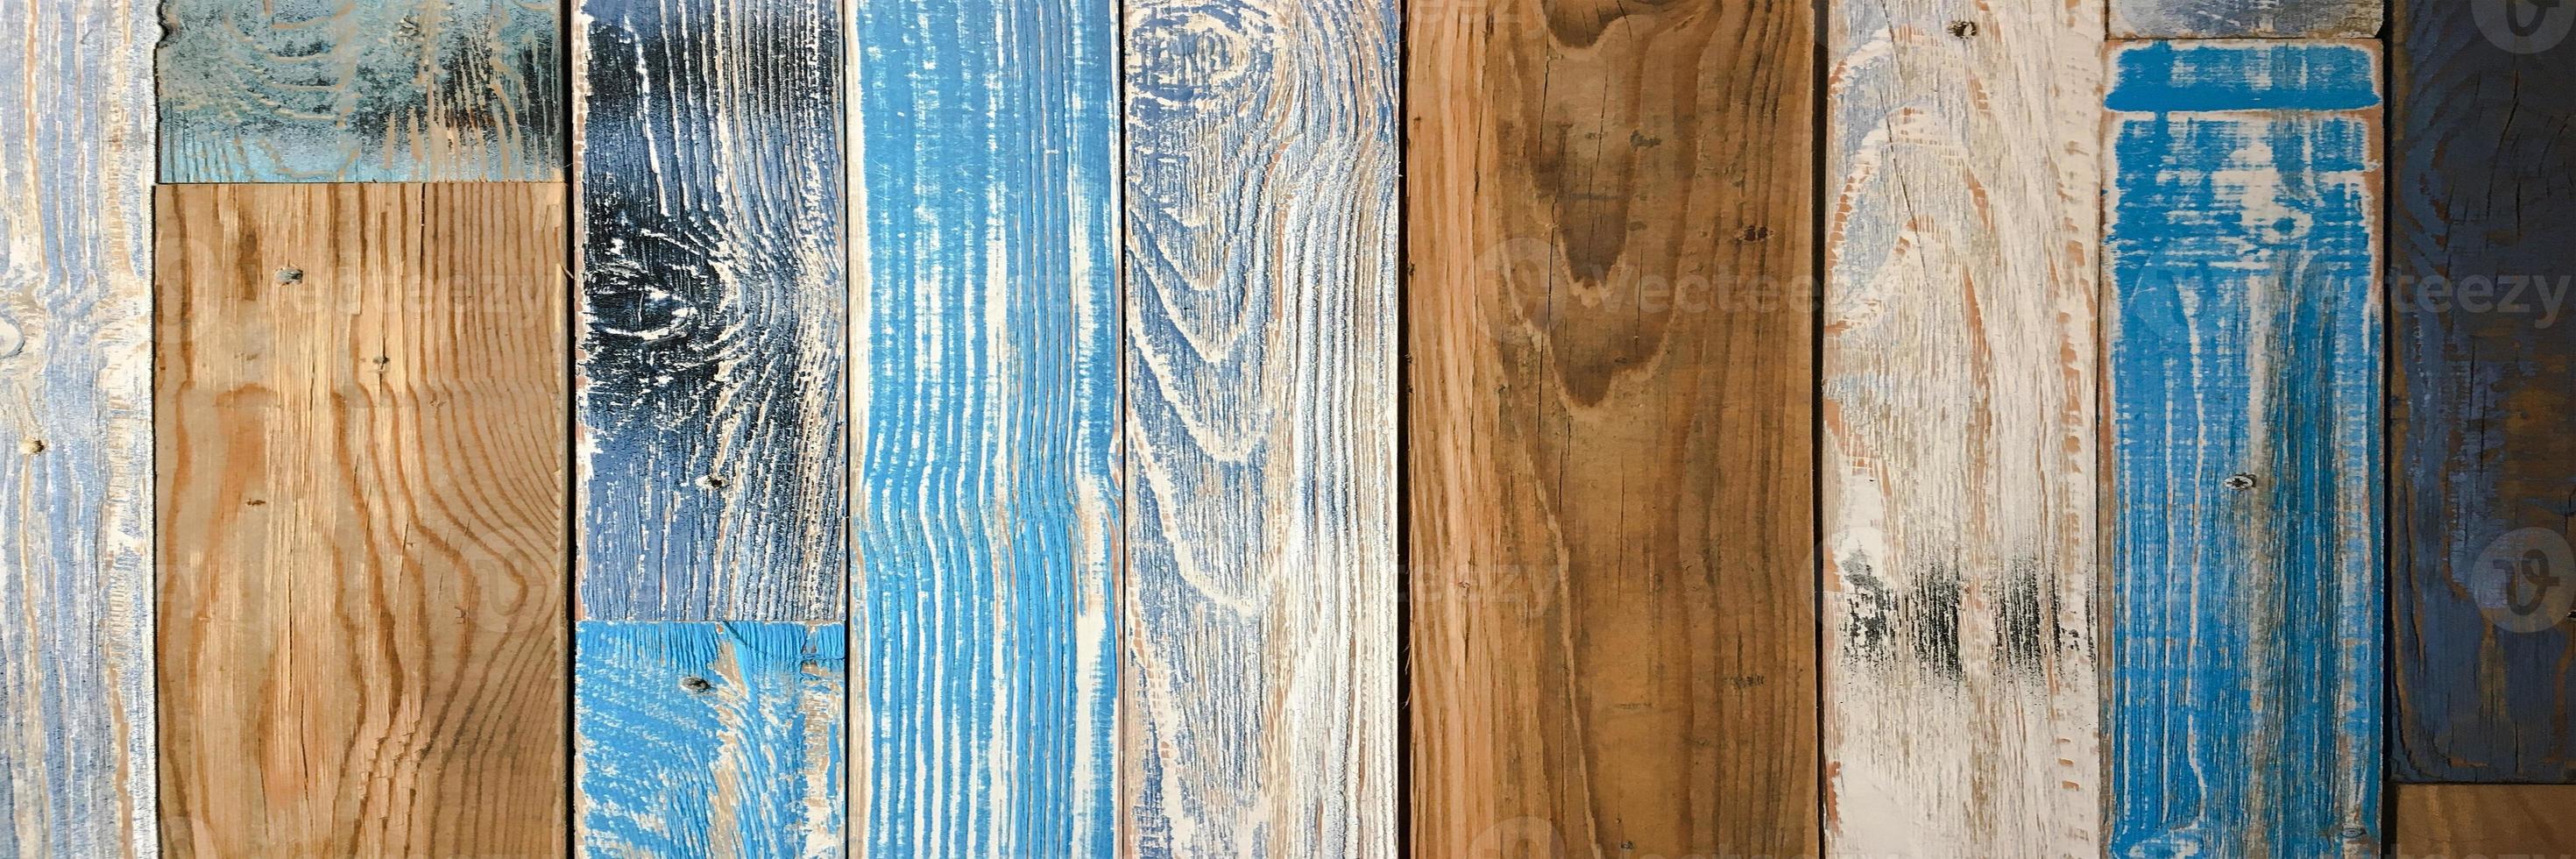 houtstructuur achtergrond. houten vloer of tafel met natuurlijk patroon voor design en decoratie. bruin graan zacht hout oppervlak. foto